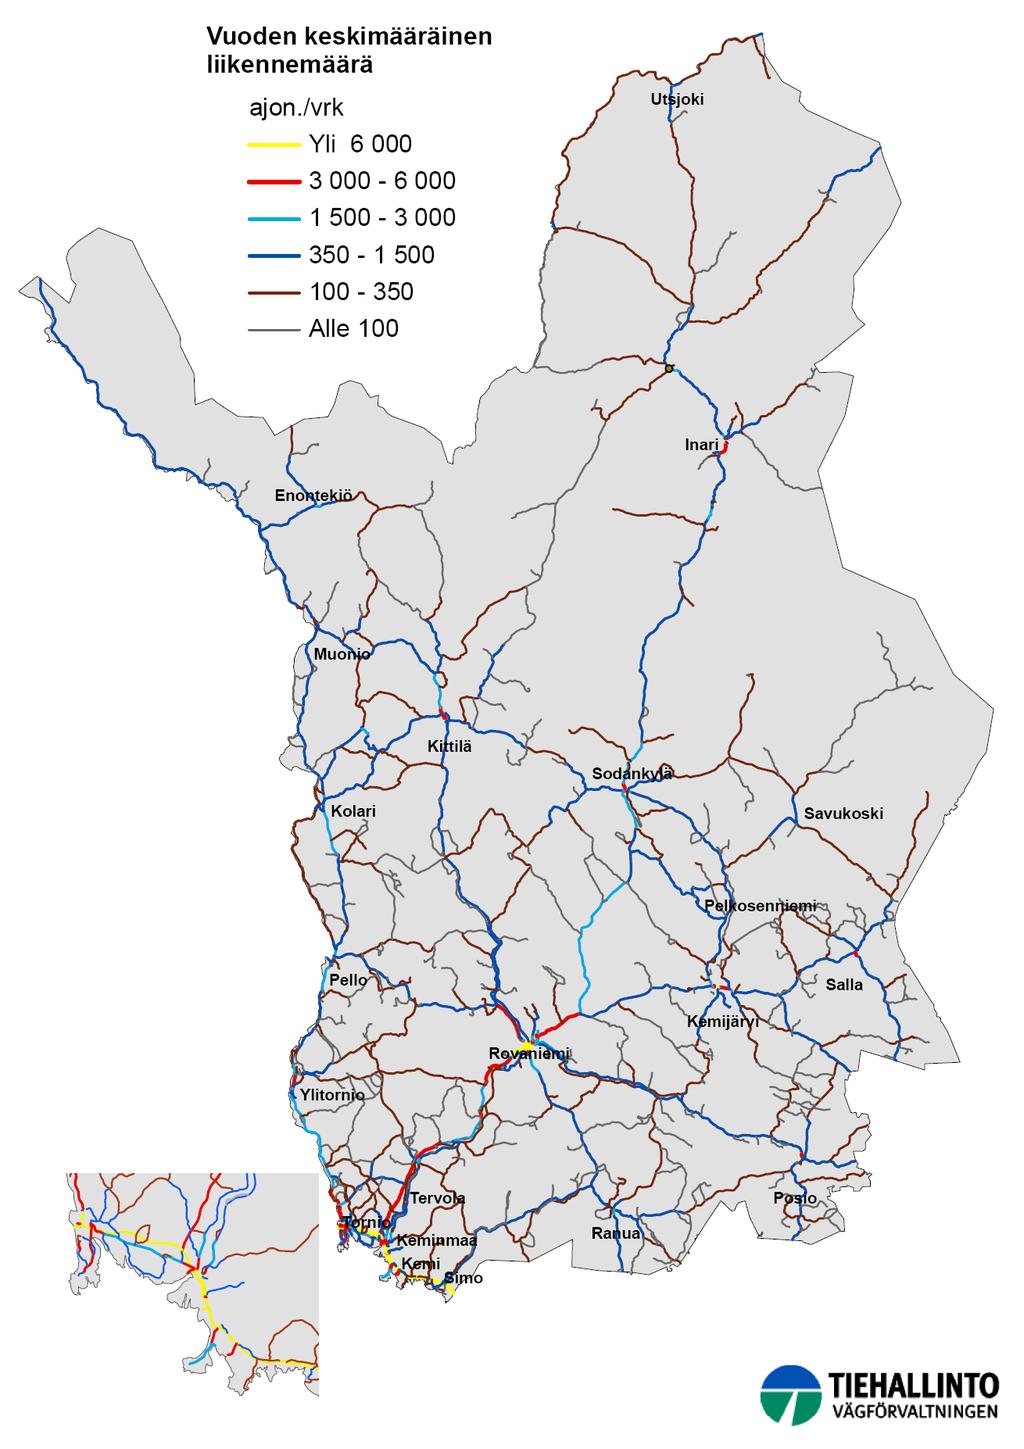 16 Lapin tiepiirin toimintastrategia TOIMINTAYMPÄRISTÖ Liikennemäärät Lapin maanteillä ovat pieniä.